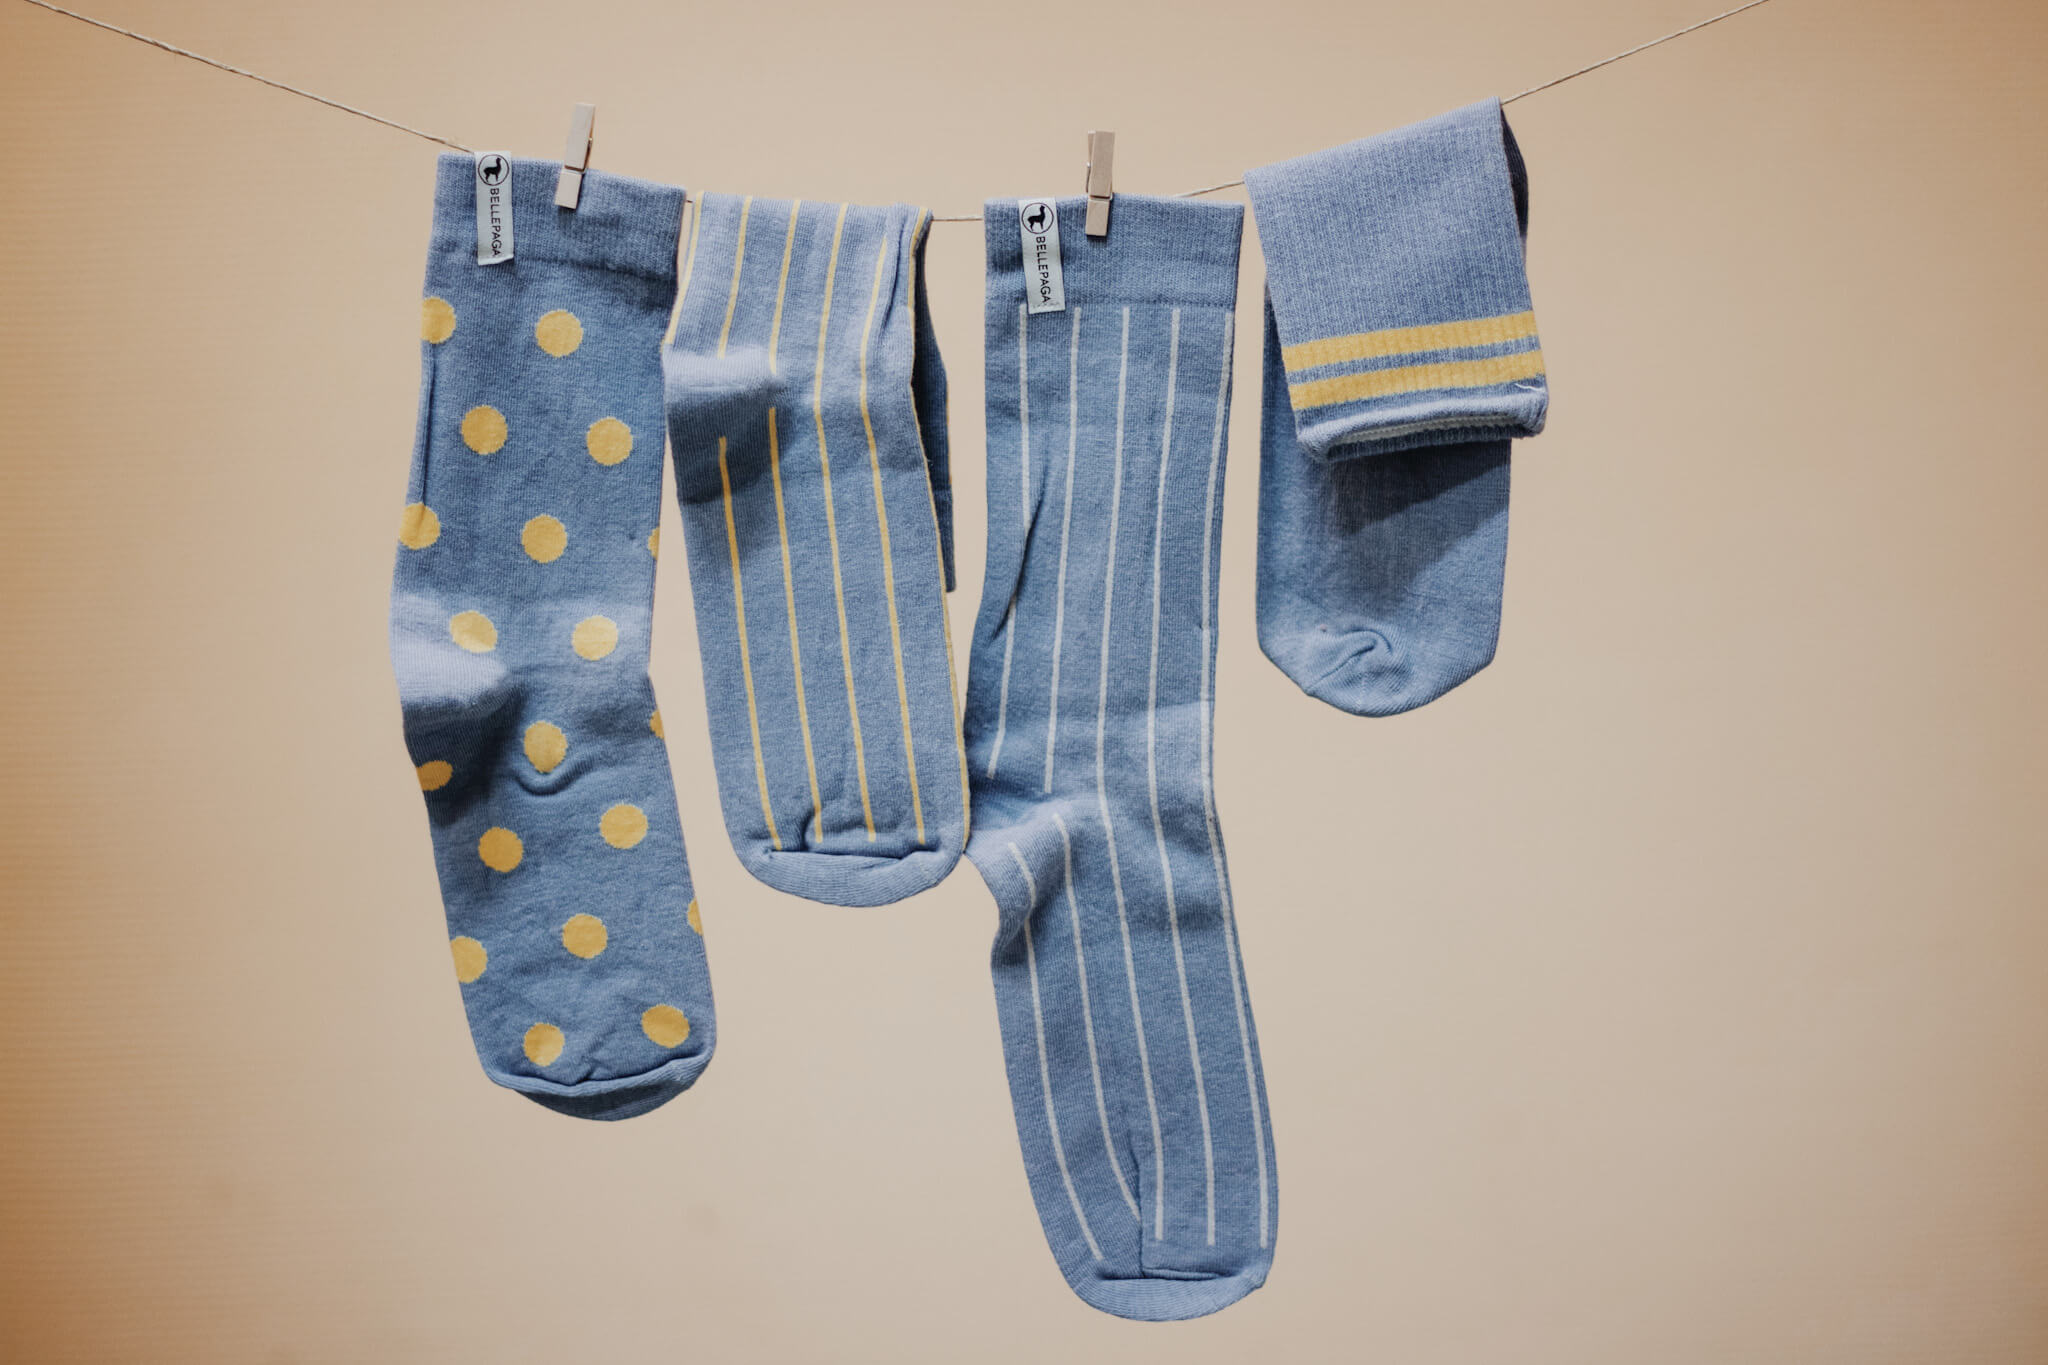 Socks on drying rack